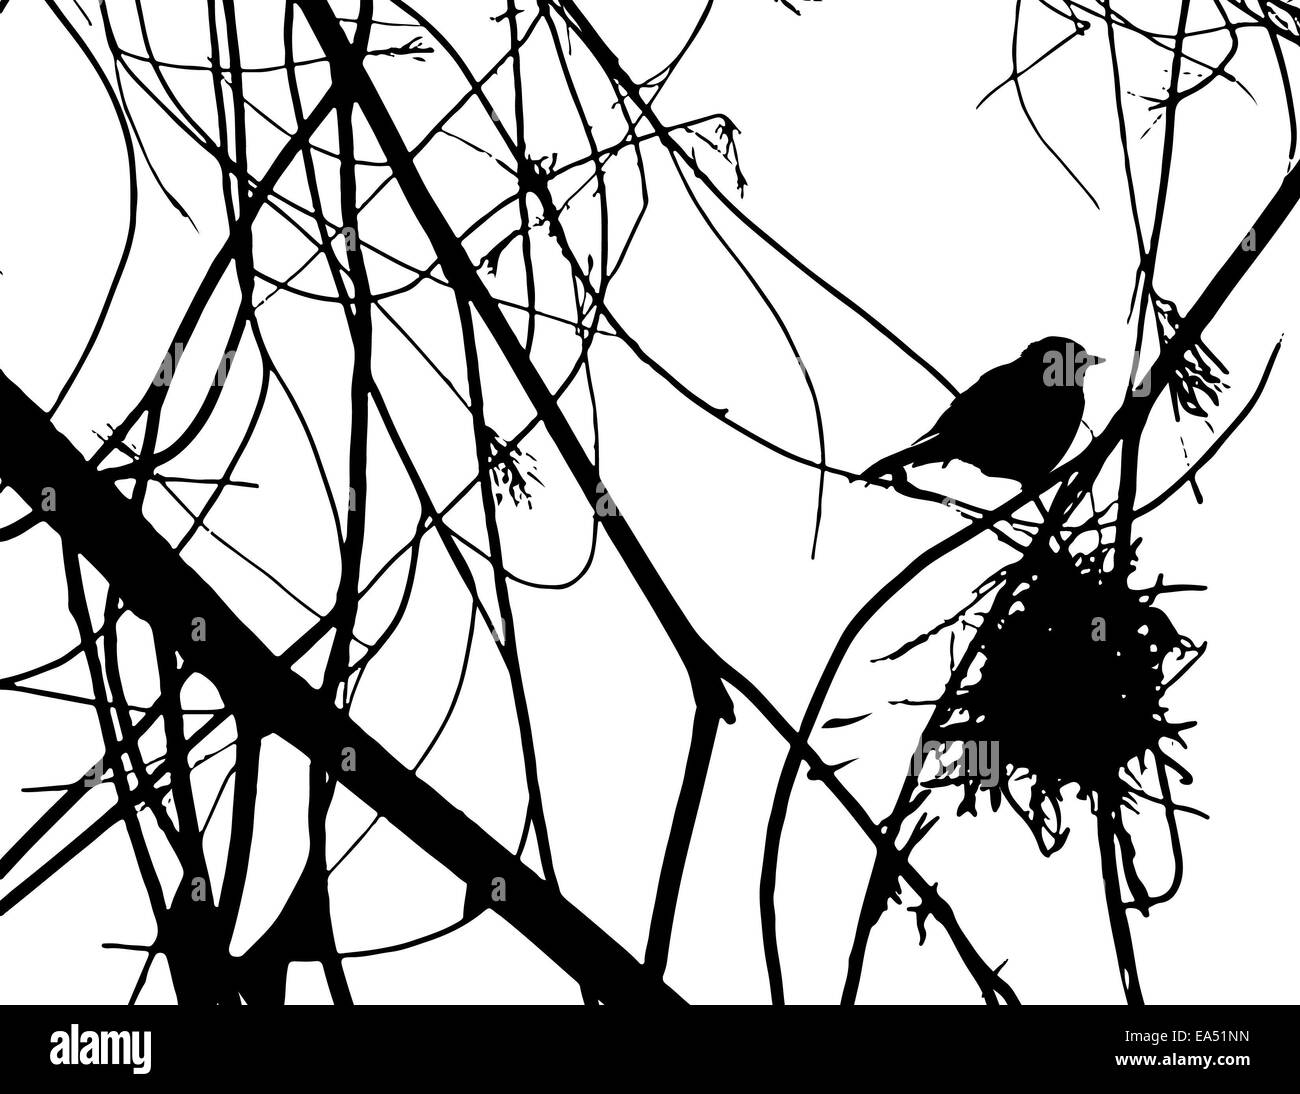 Illustrazione realistica di un uccello bianco e nero con un nido in una struttura ad albero Foto Stock